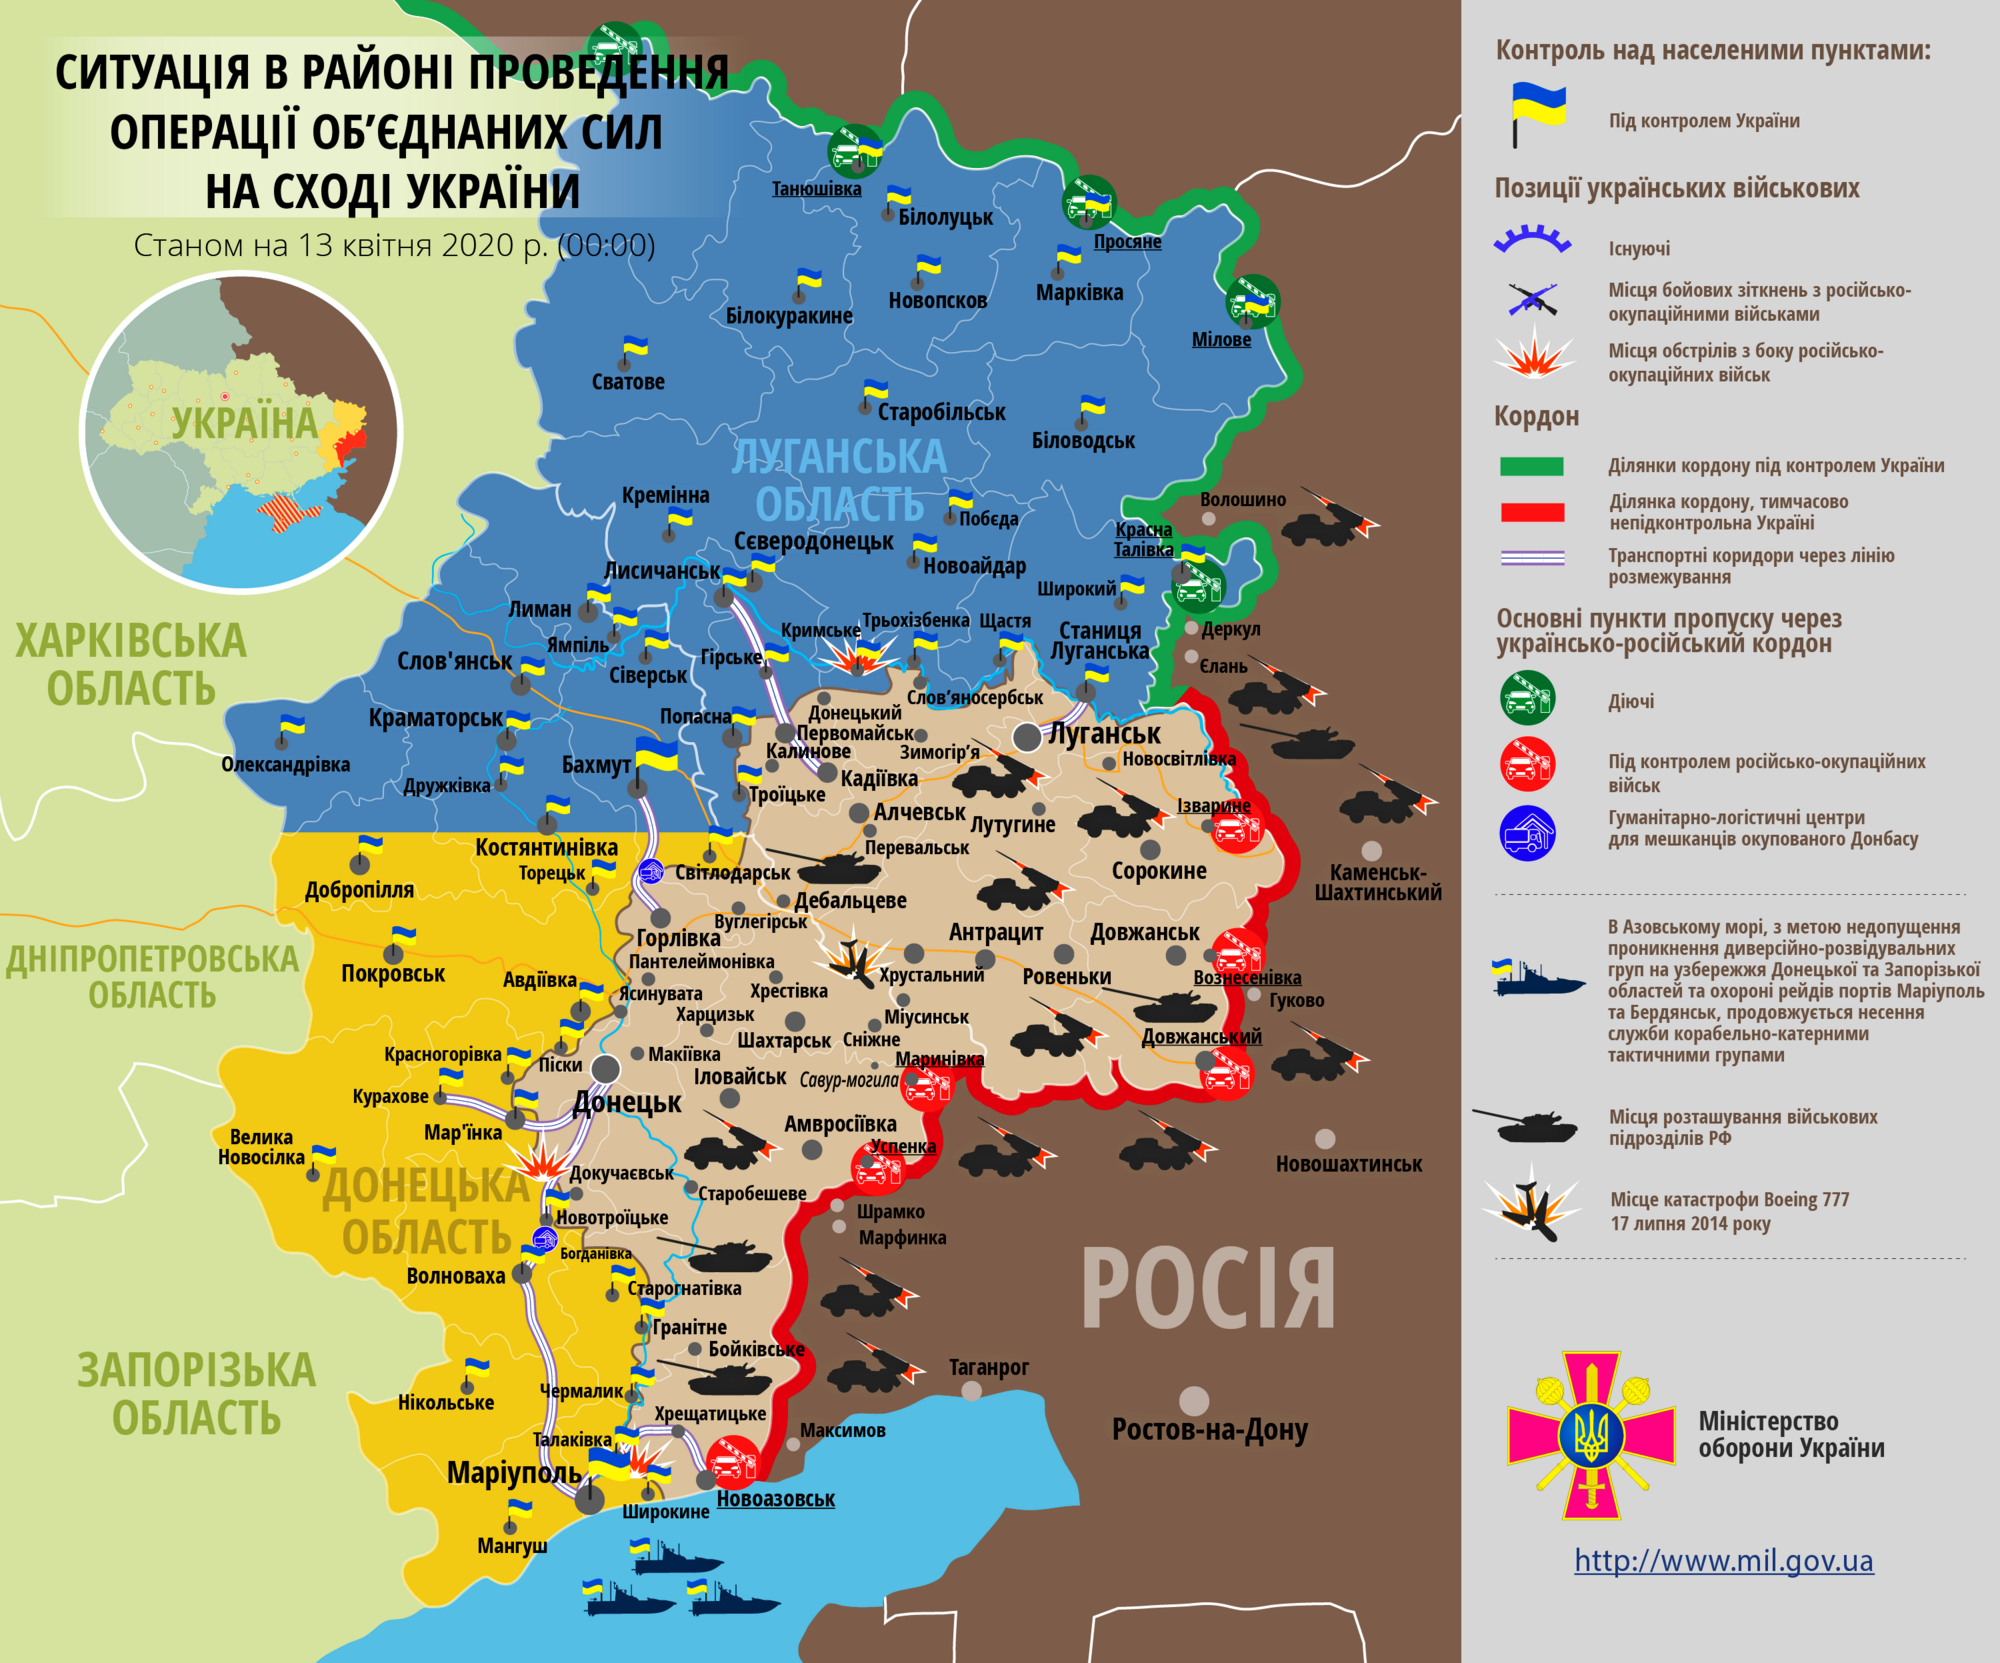 Ситуация в зоне проведения ООС на Донбассе 13 апреля